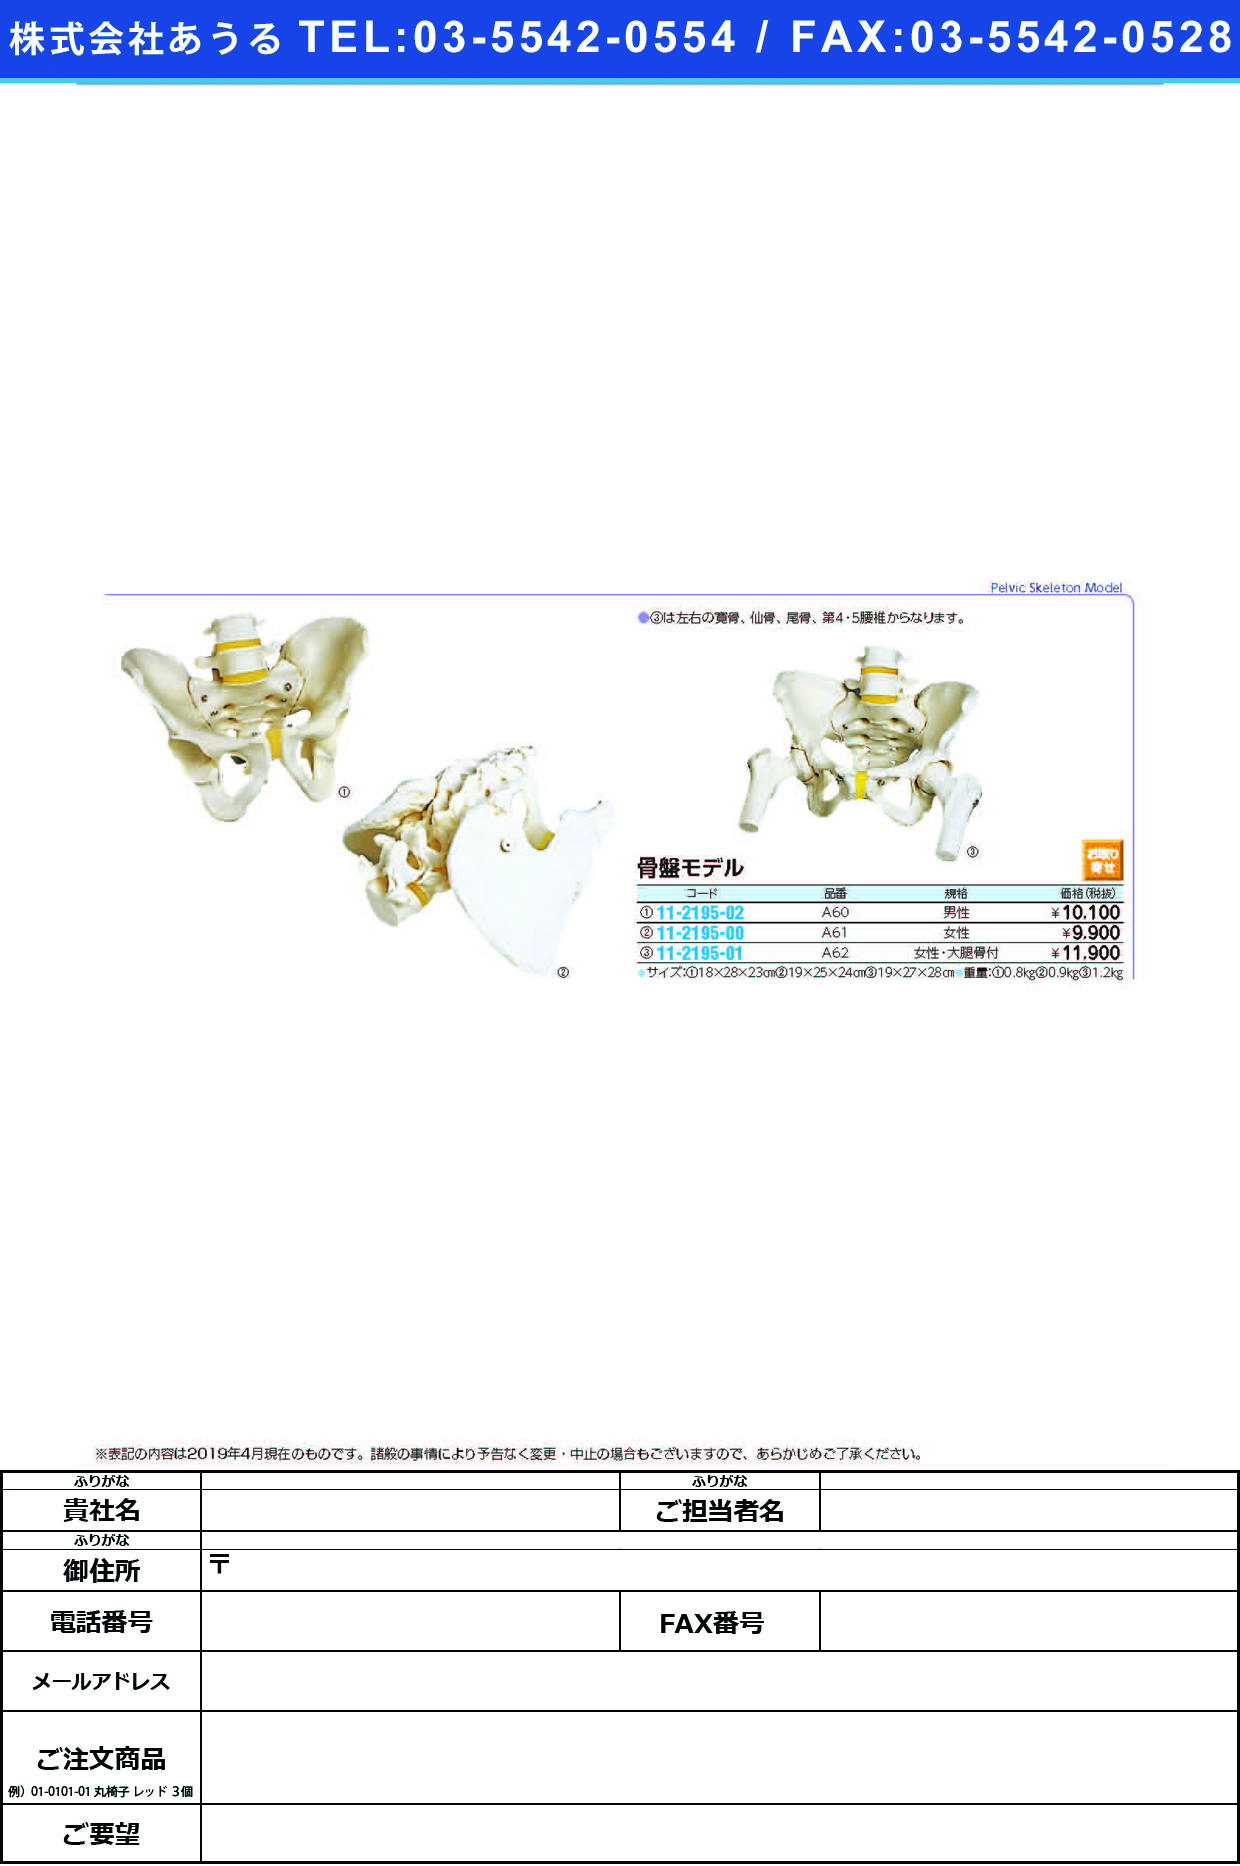 (11-2195-02)骨盤モデル（男性） A60(18X28X23CM) ｺﾂﾊﾞﾝﾓﾃﾞﾙ(京都科学)【1台単位】【2019年カタログ商品】